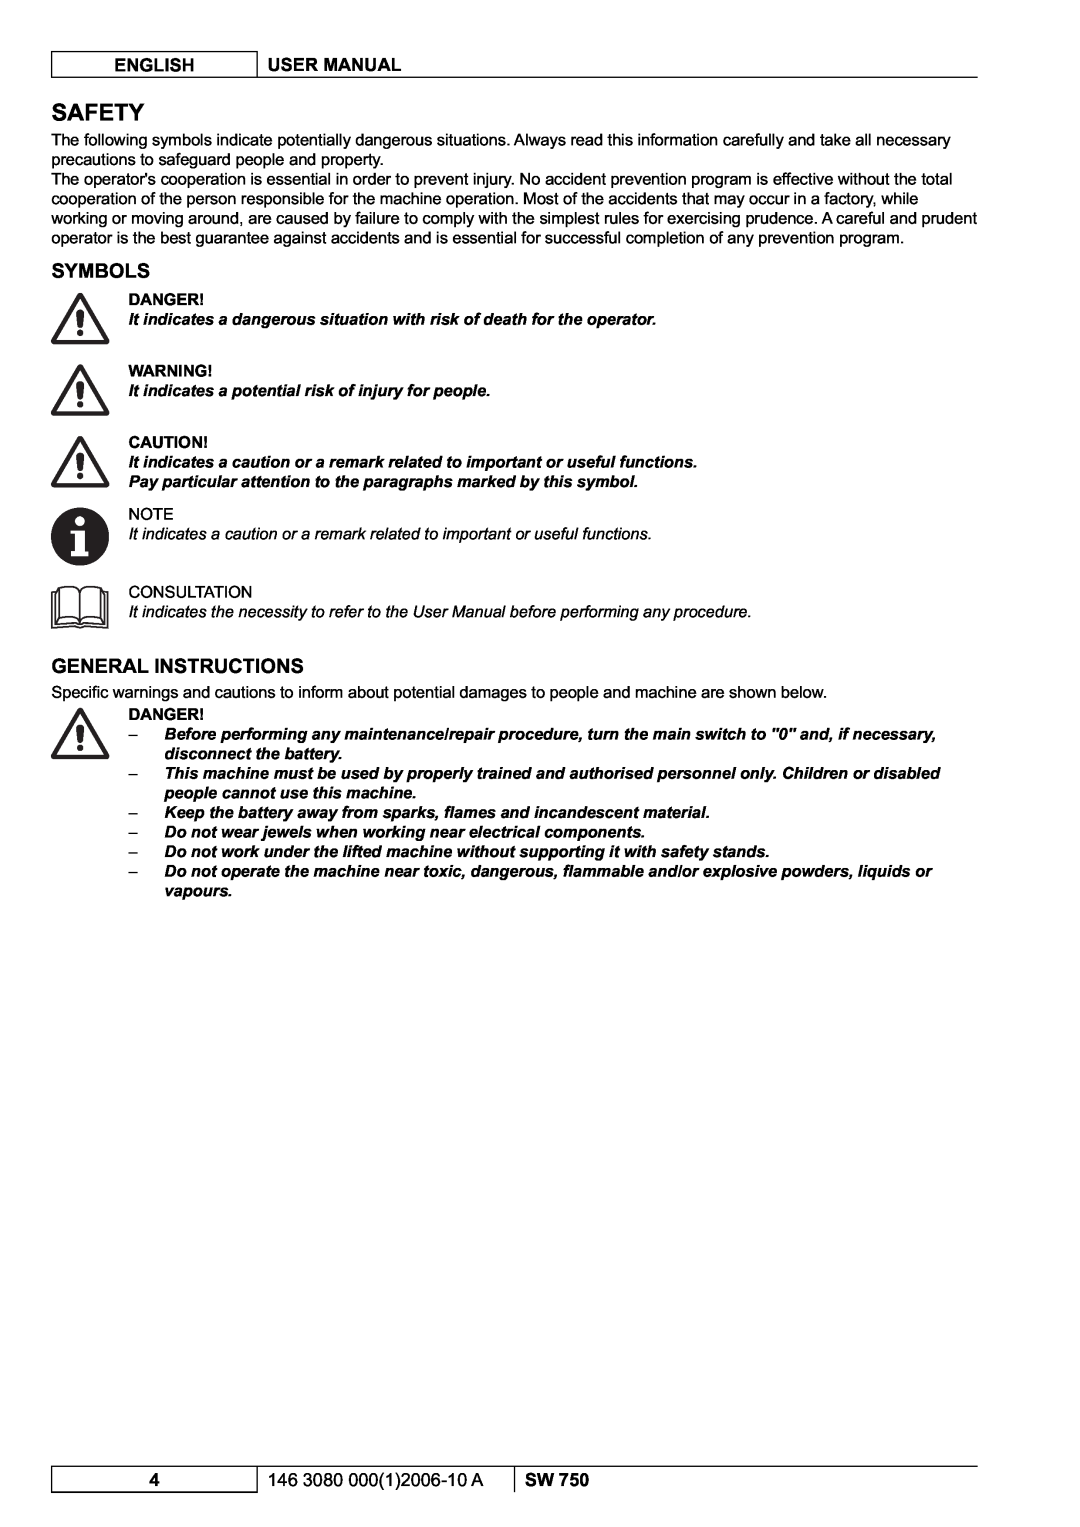 Nilfisk-ALTO SW 750 manuel dutilisation Safety, Symbols, General Instructions, Danger 